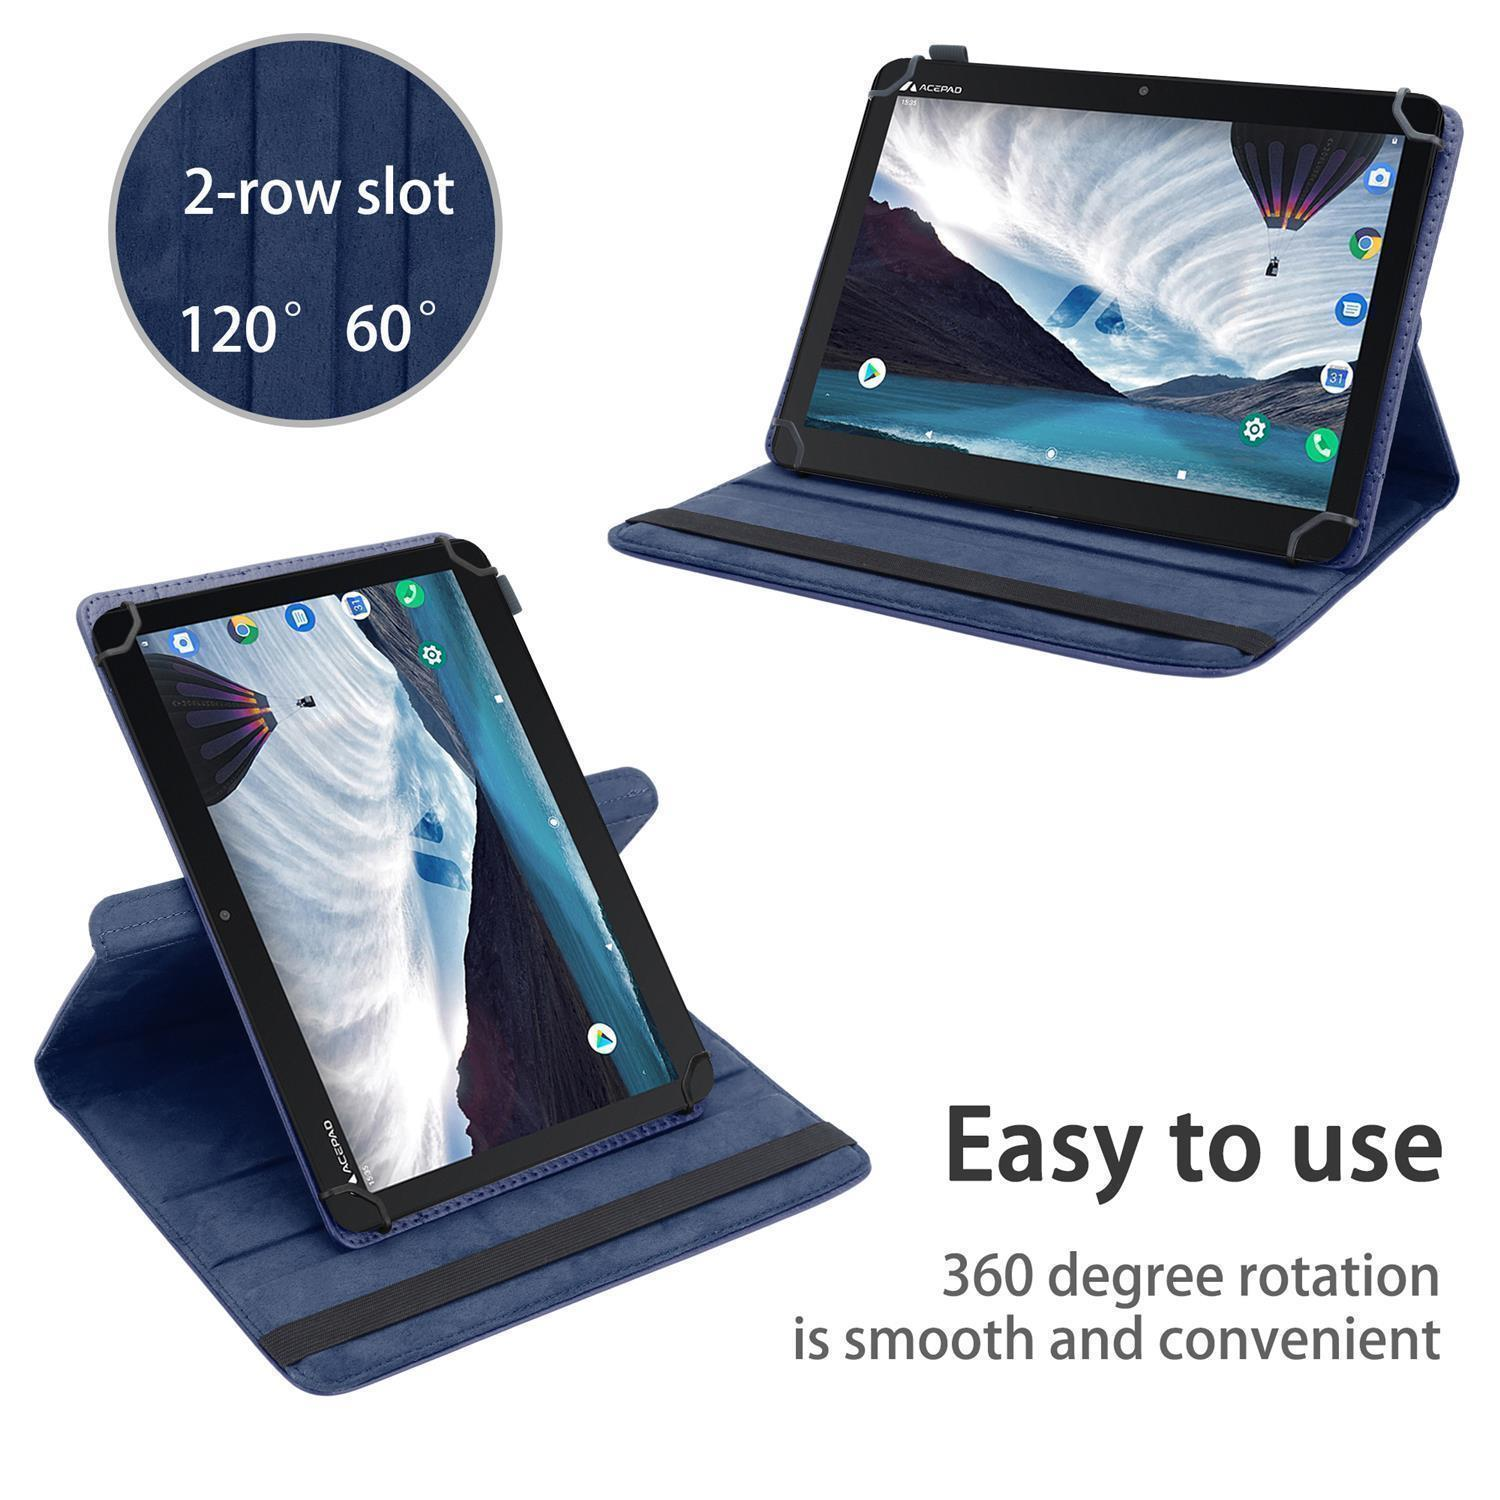 BLAU Schutz Tablethülle für DUNKEL Grad Tablet Medion Hülle Kunstleder, Backcover CADORABO 360